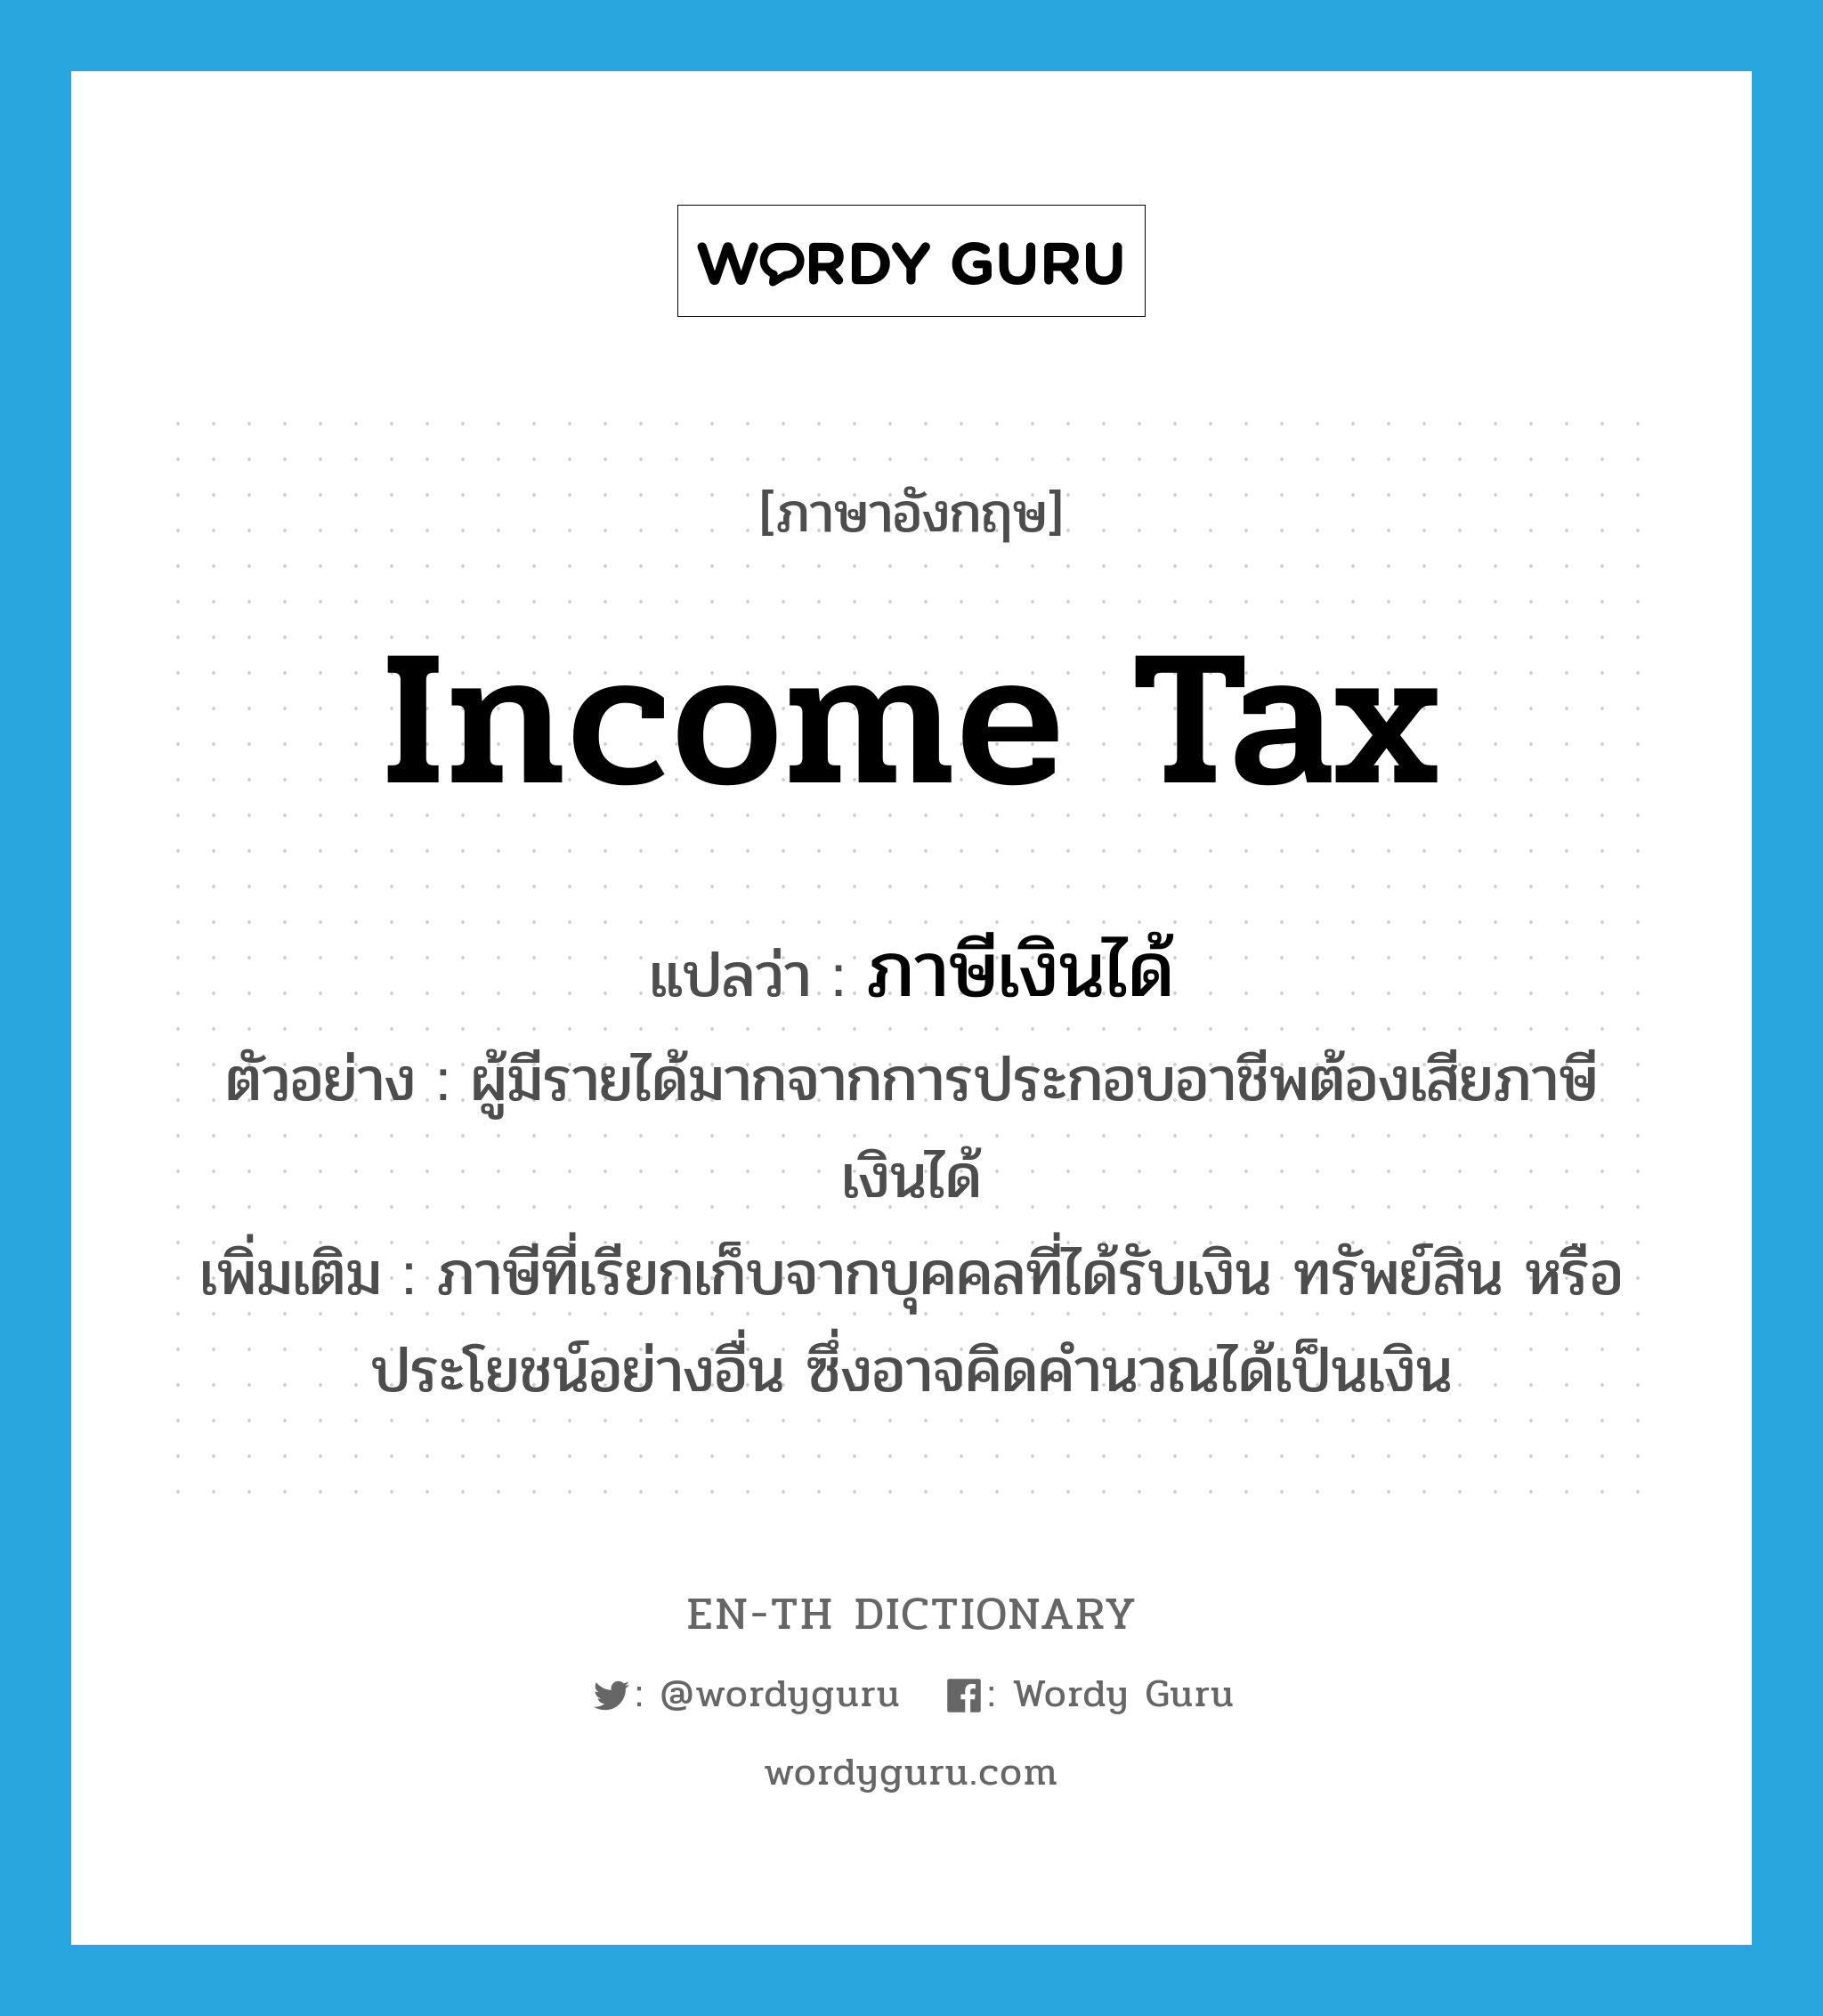 ภาษีเงินได้ ภาษาอังกฤษ?, คำศัพท์ภาษาอังกฤษ ภาษีเงินได้ แปลว่า income tax ประเภท N ตัวอย่าง ผู้มีรายได้มากจากการประกอบอาชีพต้องเสียภาษีเงินได้ เพิ่มเติม ภาษีที่เรียกเก็บจากบุคคลที่ได้รับเงิน ทรัพย์สิน หรือประโยชน์อย่างอื่น ซึ่งอาจคิดคำนวณได้เป็นเงิน หมวด N